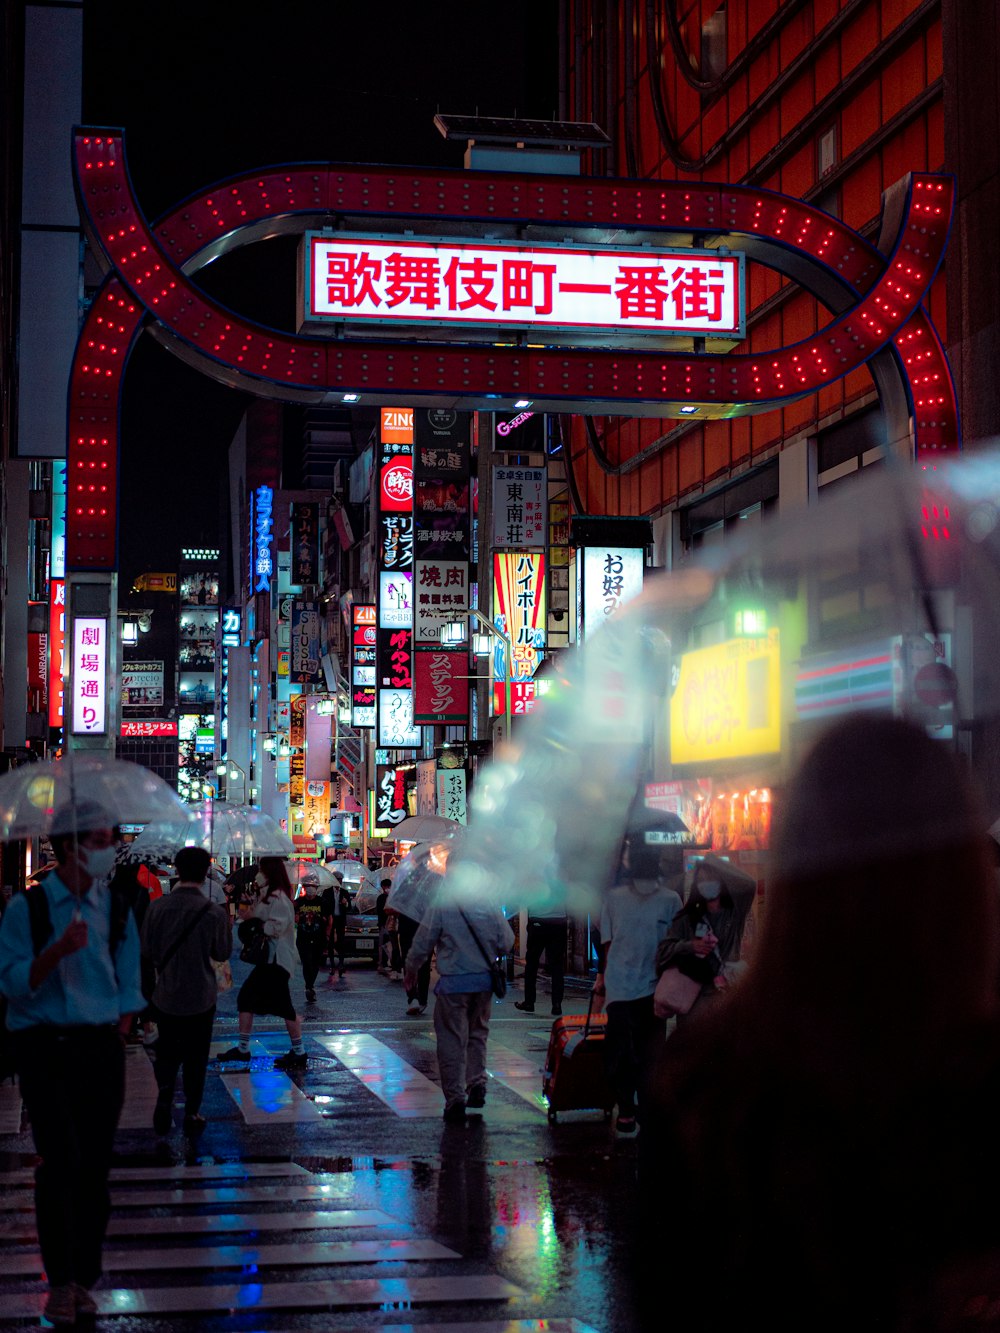 Eine Gruppe von Menschen, die nachts in einer Stadt spazieren gehen